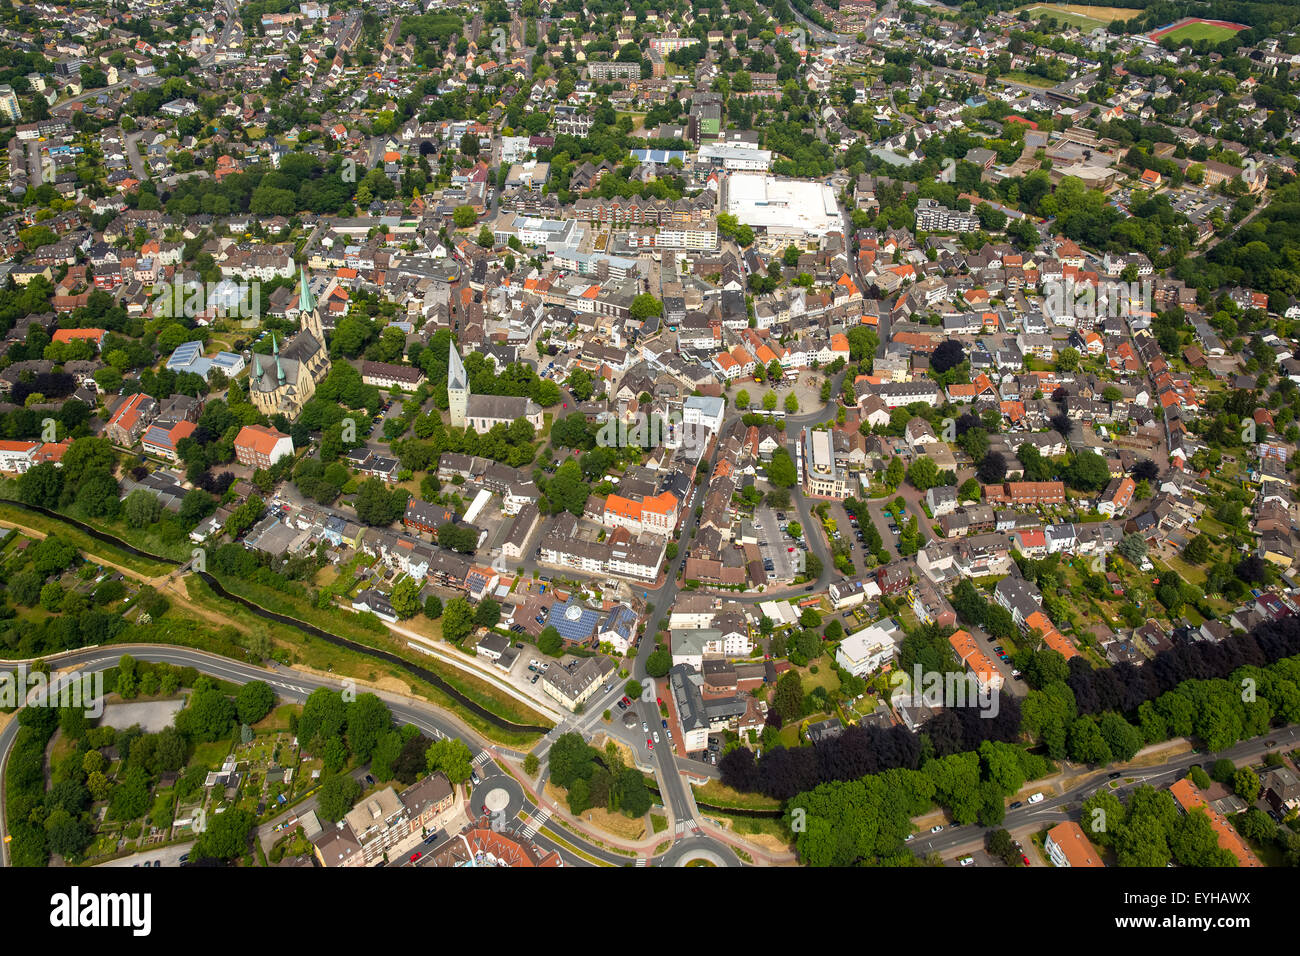 El centro de la ciudad, Kamen, districto de Ruhr, Renania del Norte-Westfalia, Alemania Foto de stock